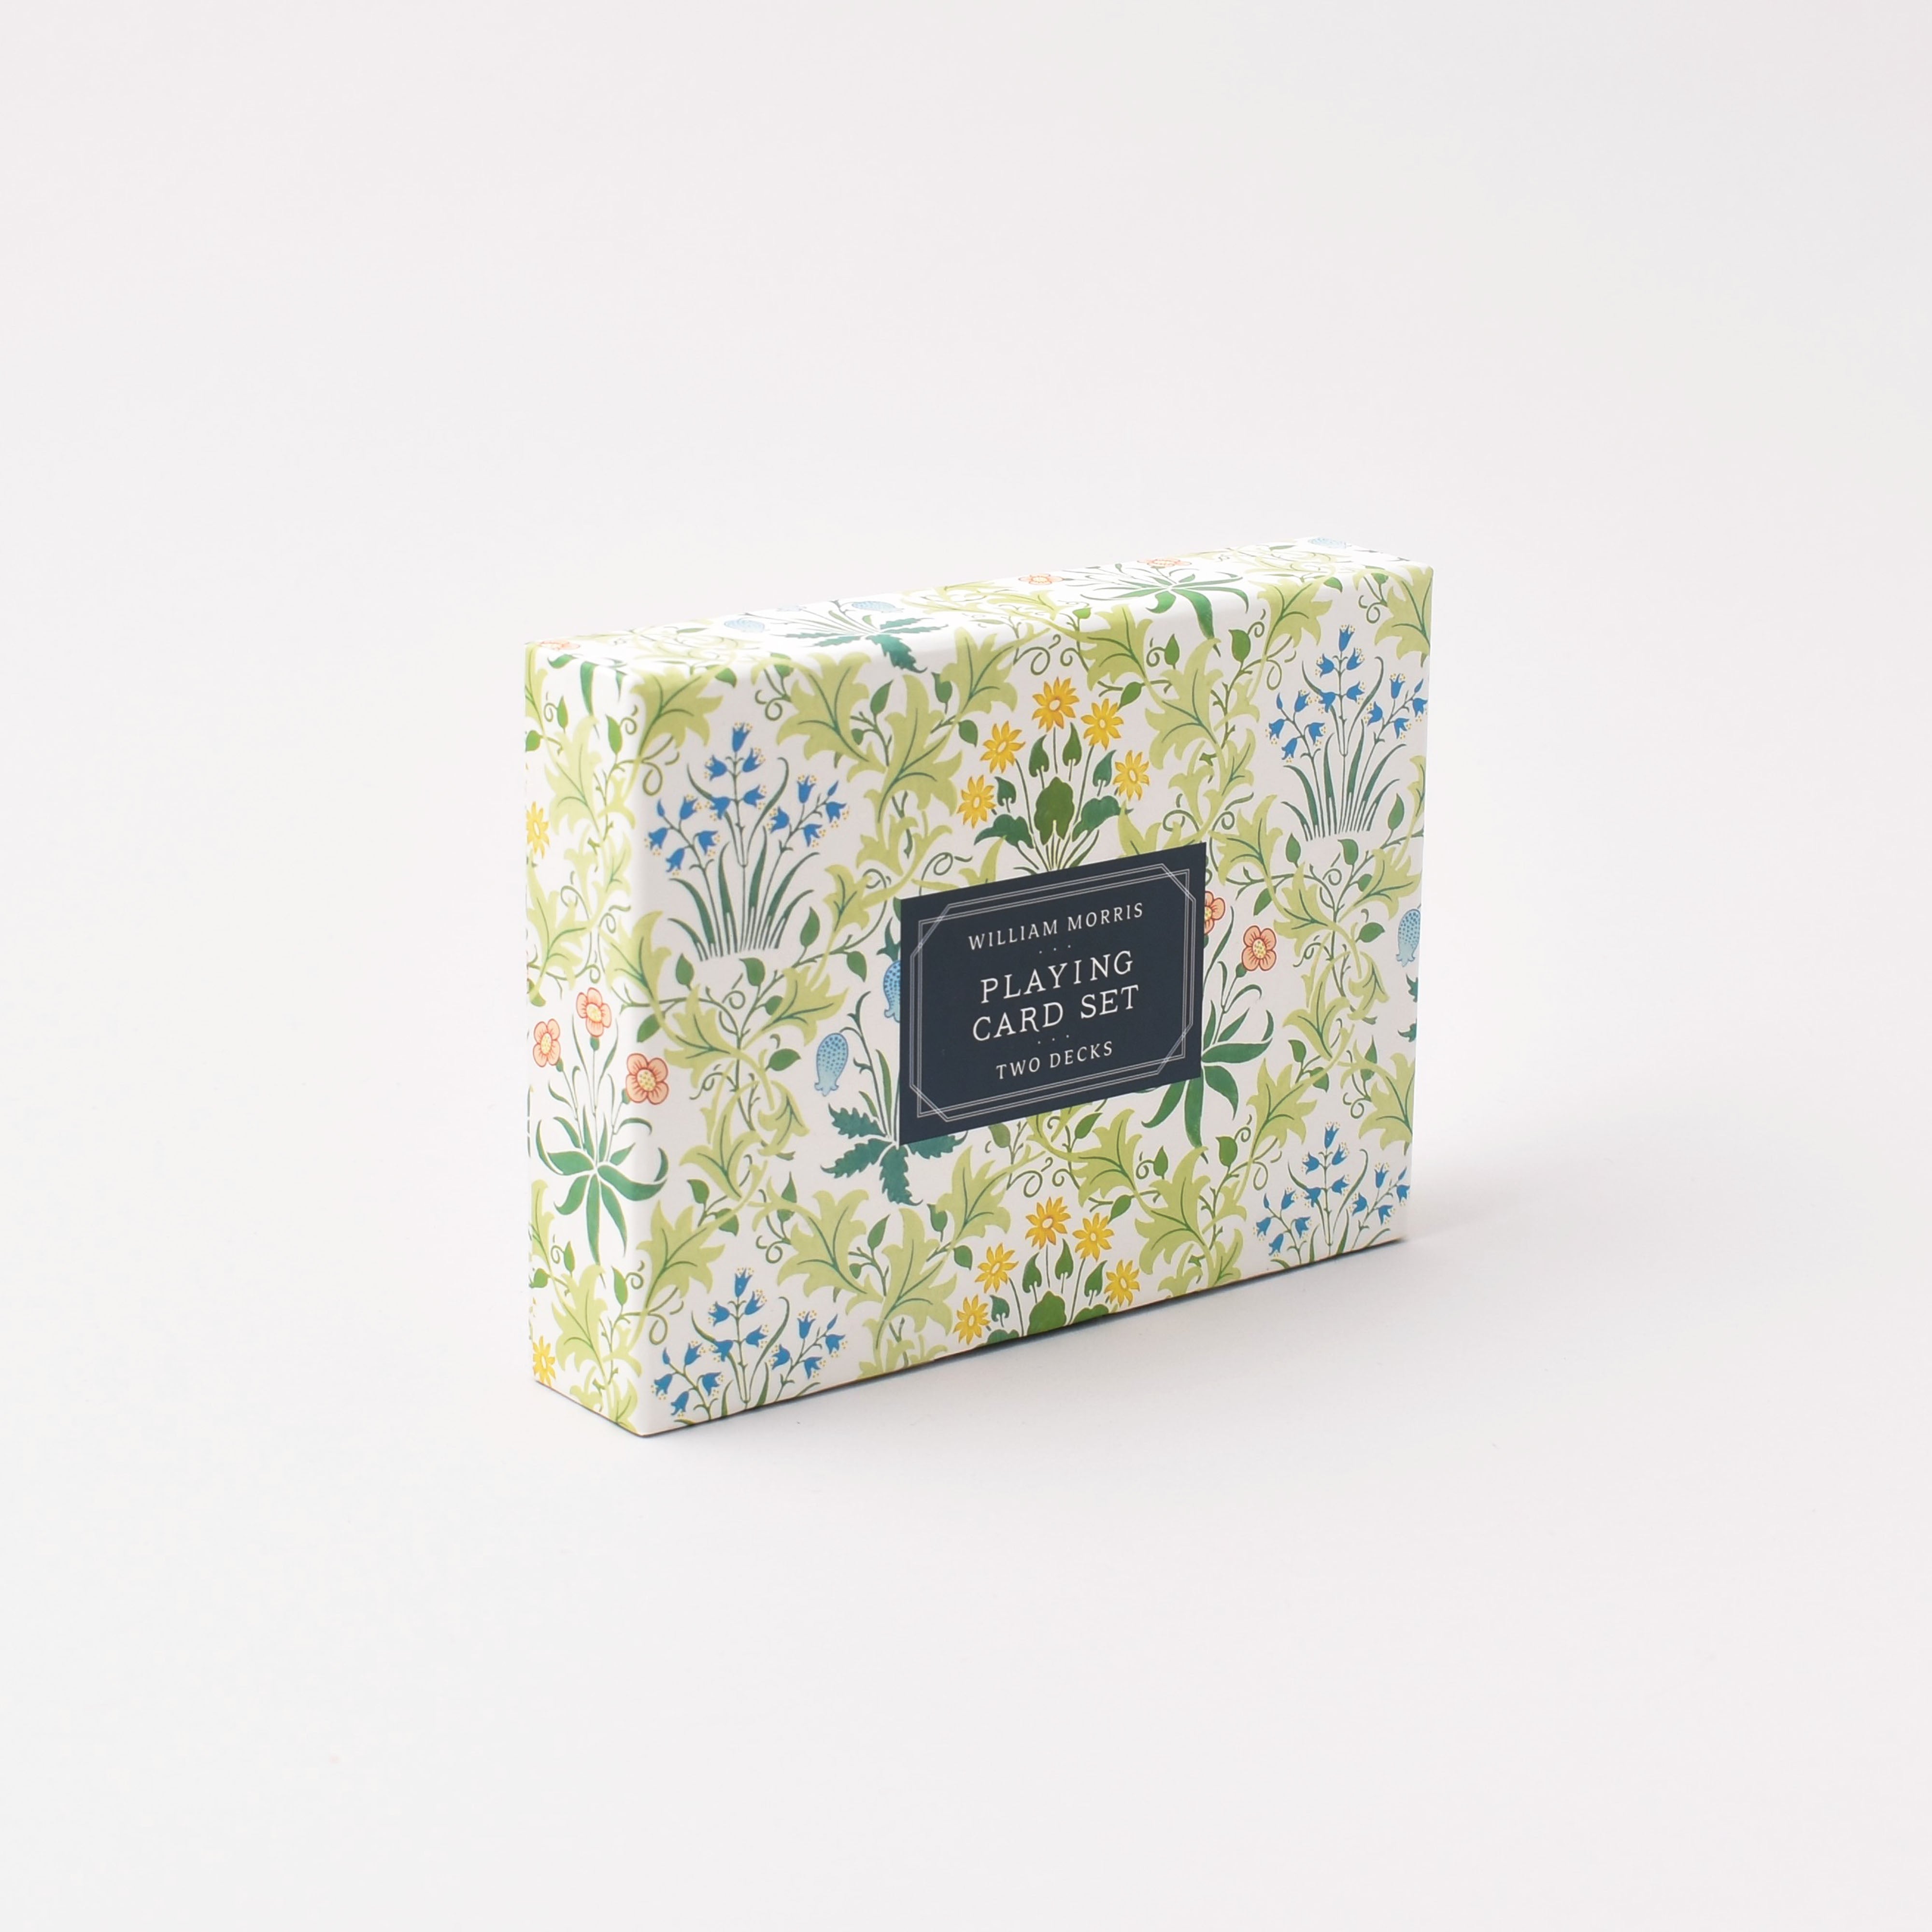 Blommig ask med spelkort inspirerade av William Morris mönster